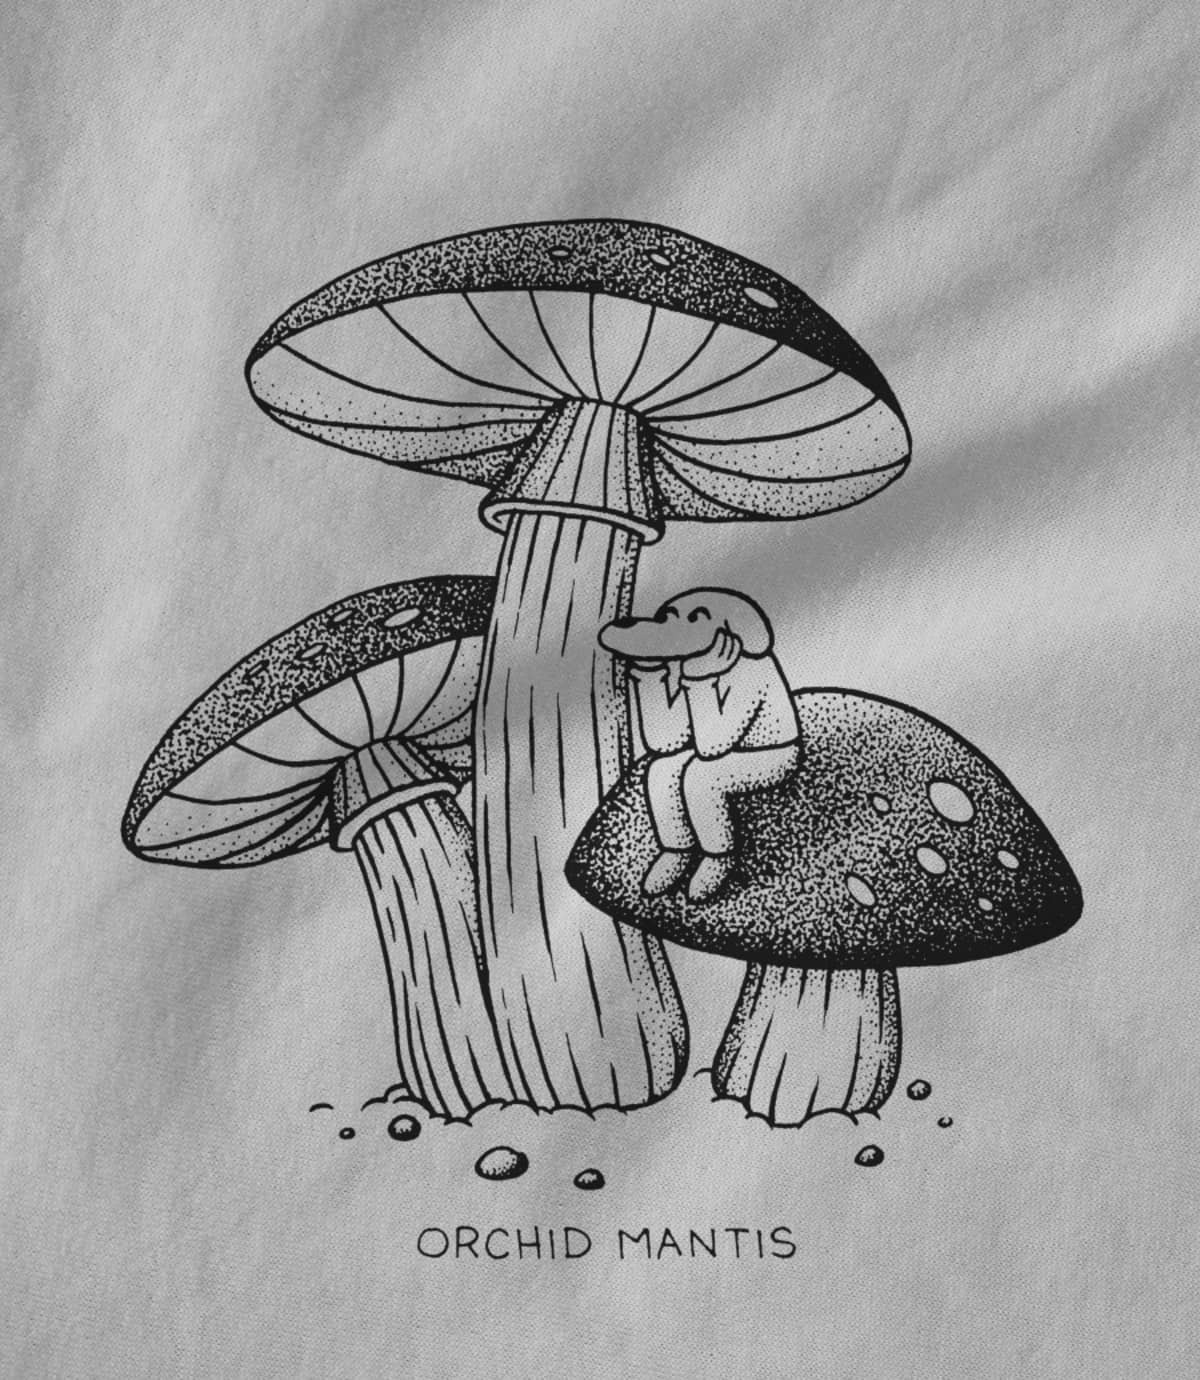 Orchid mantis mushroom shirt 1602114384